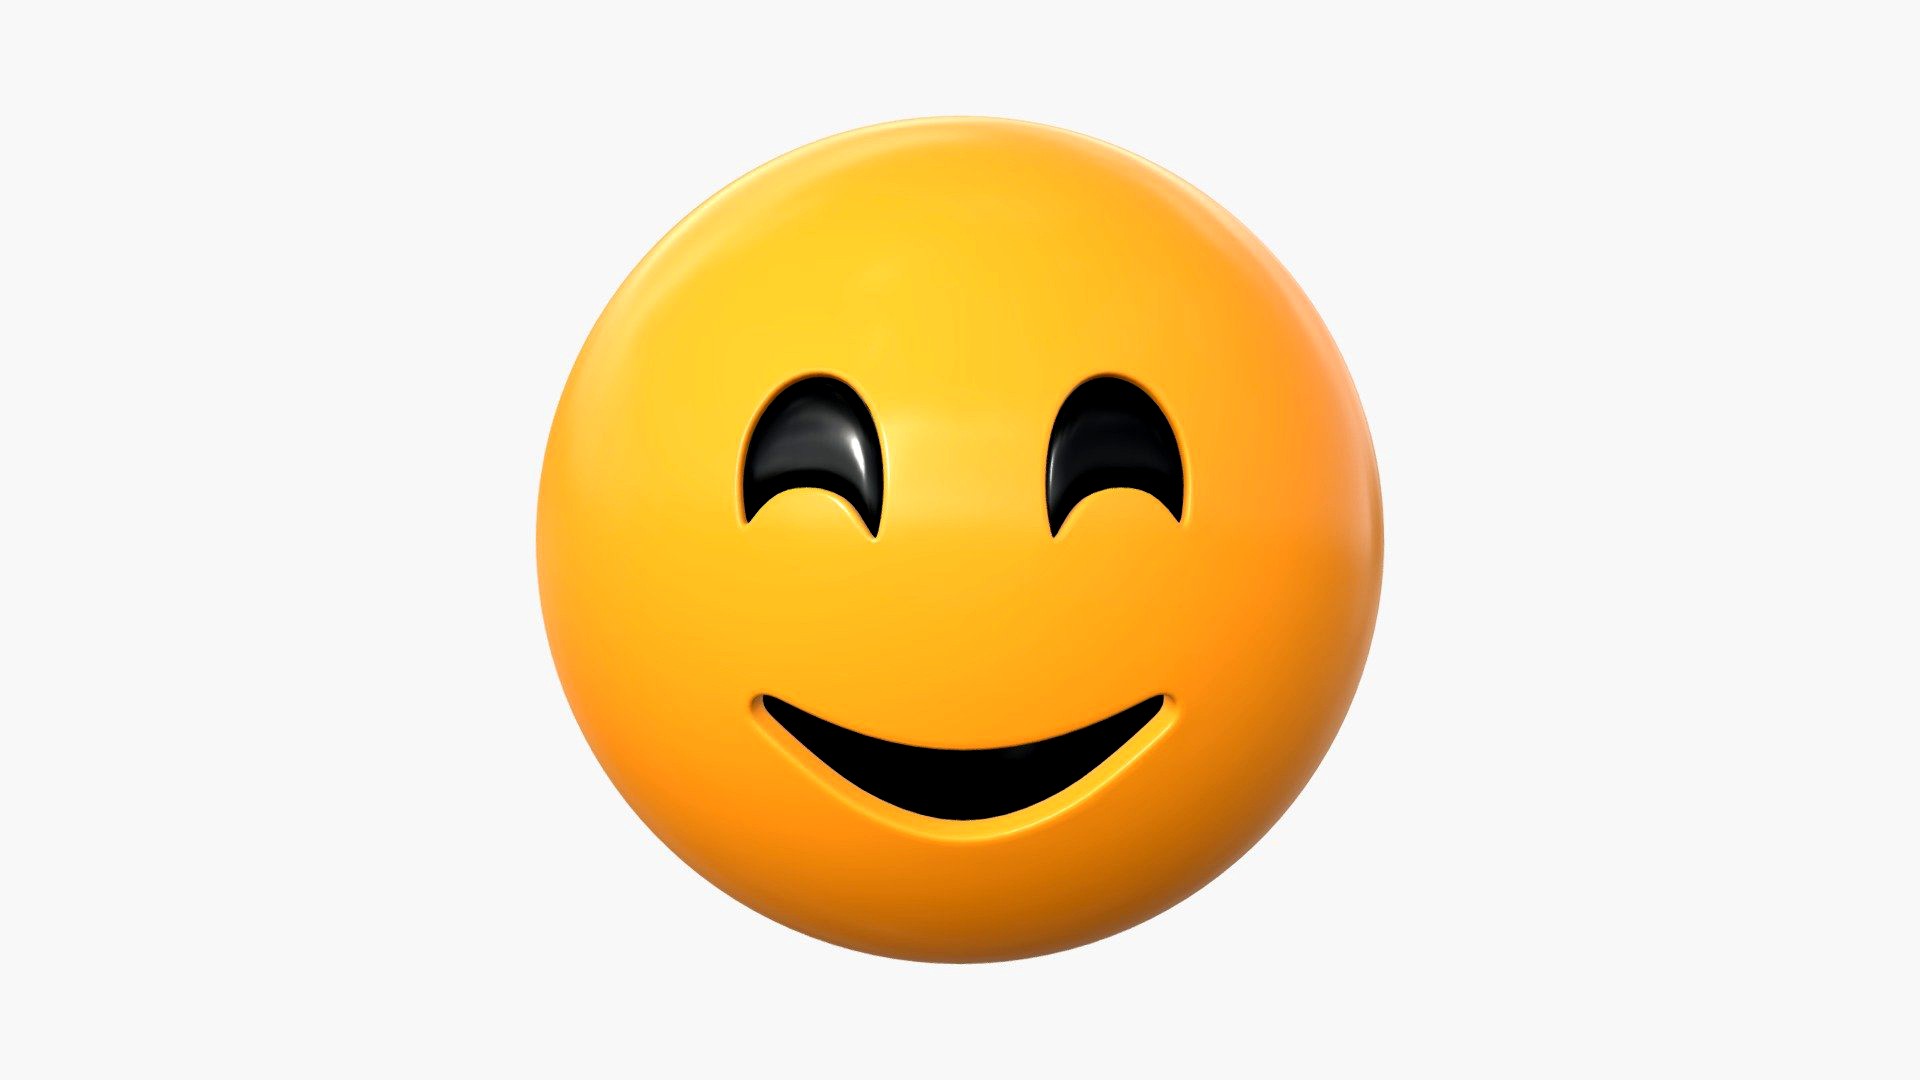 Emoji 043 Smiling with smiling eyes